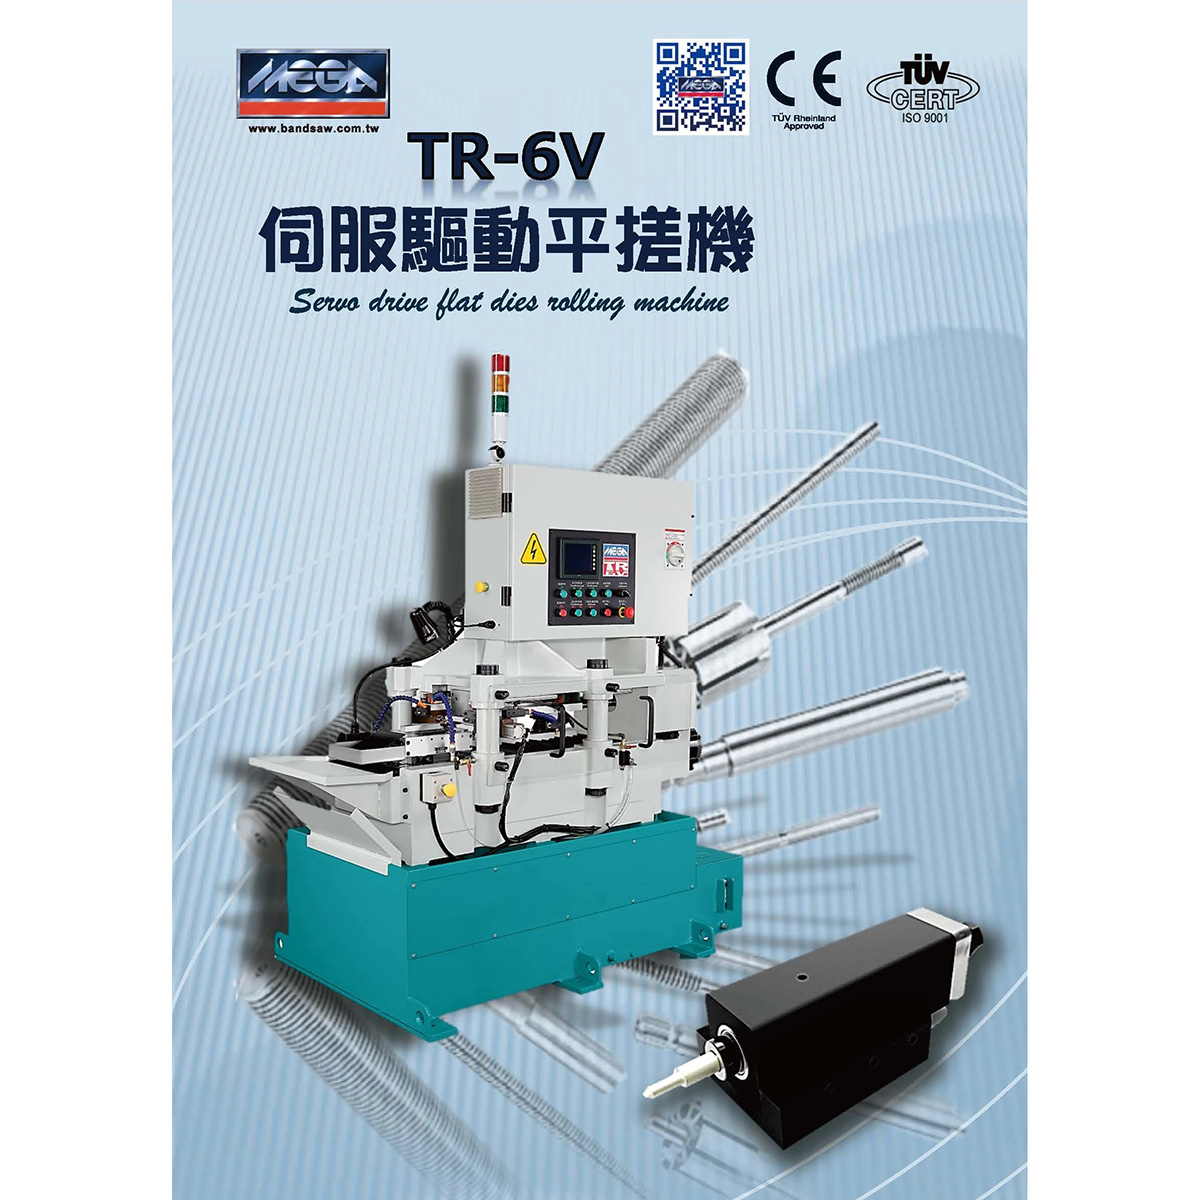 TR-V 伺服驱动平搓机